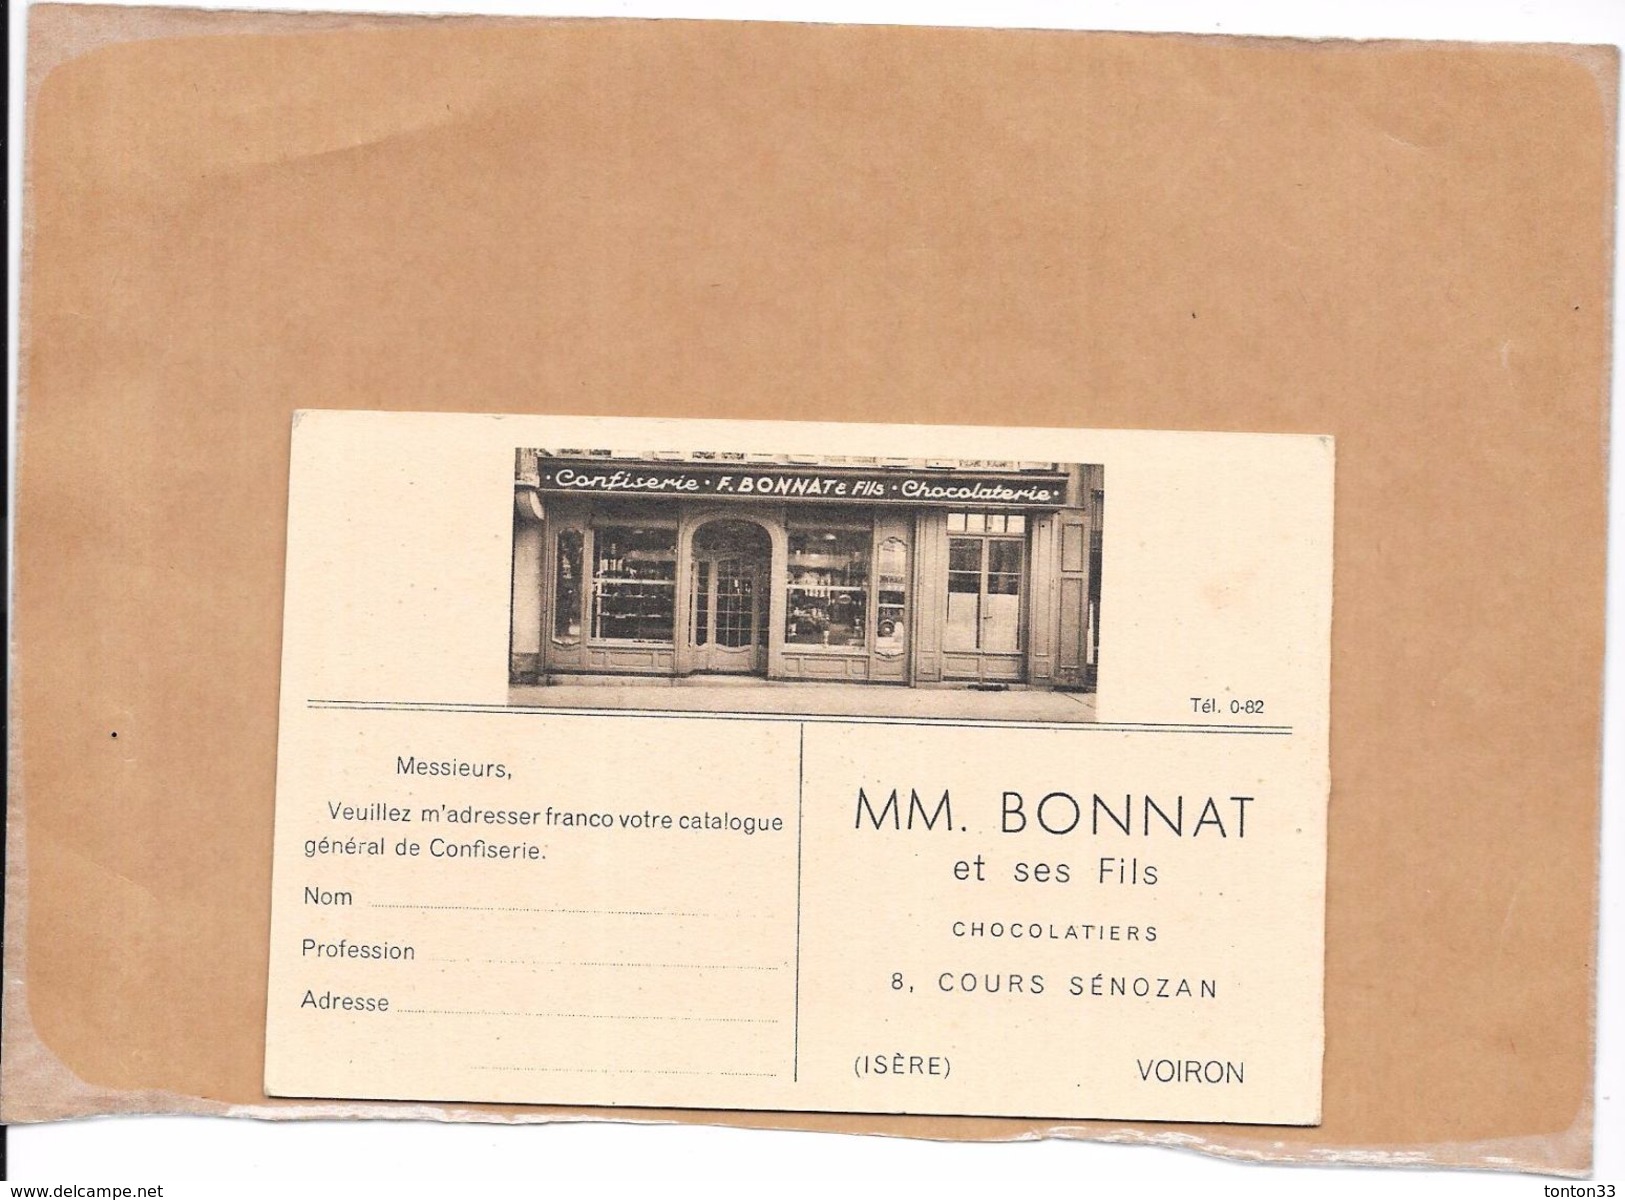 VOIRON - 38 - Carte Double - CHOCOLATIERS MM BONNAT - Commande Catalogue - BERG1 - - Voiron